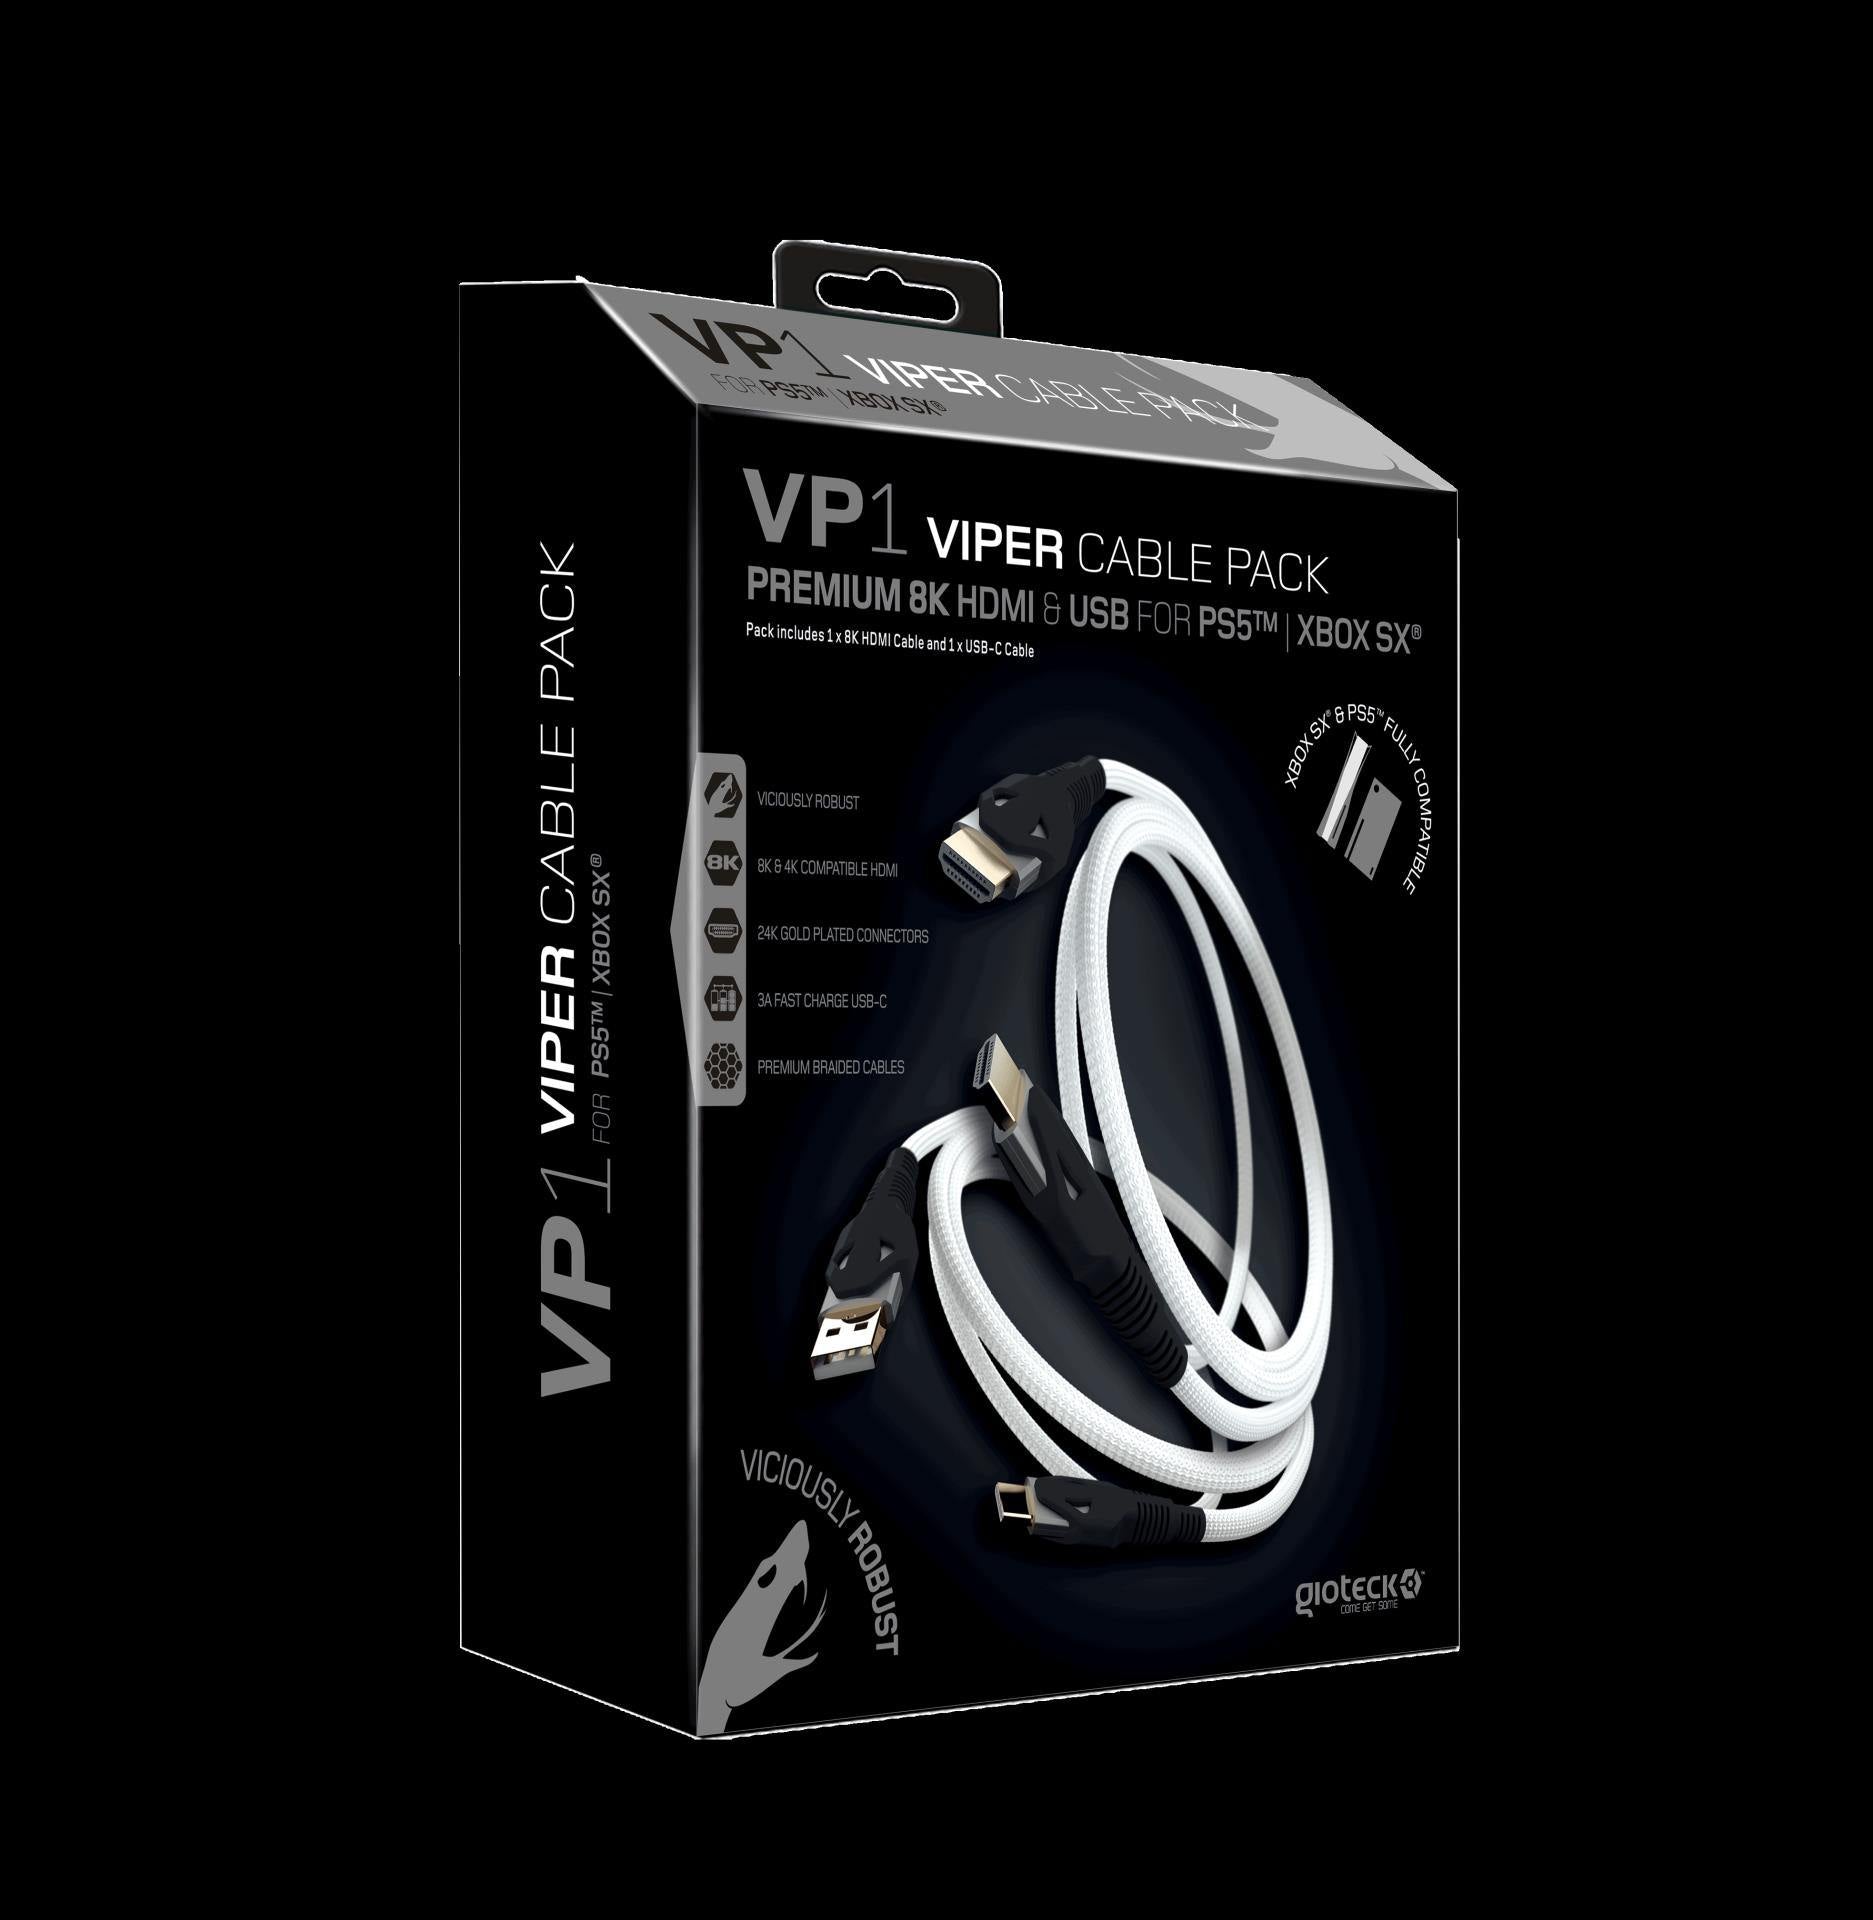 Gioteck - Pack de câble 8K HDMI et USB VP1 Viper pour PS5 et Xbox Series (Multi-Platform) - flash vidéo